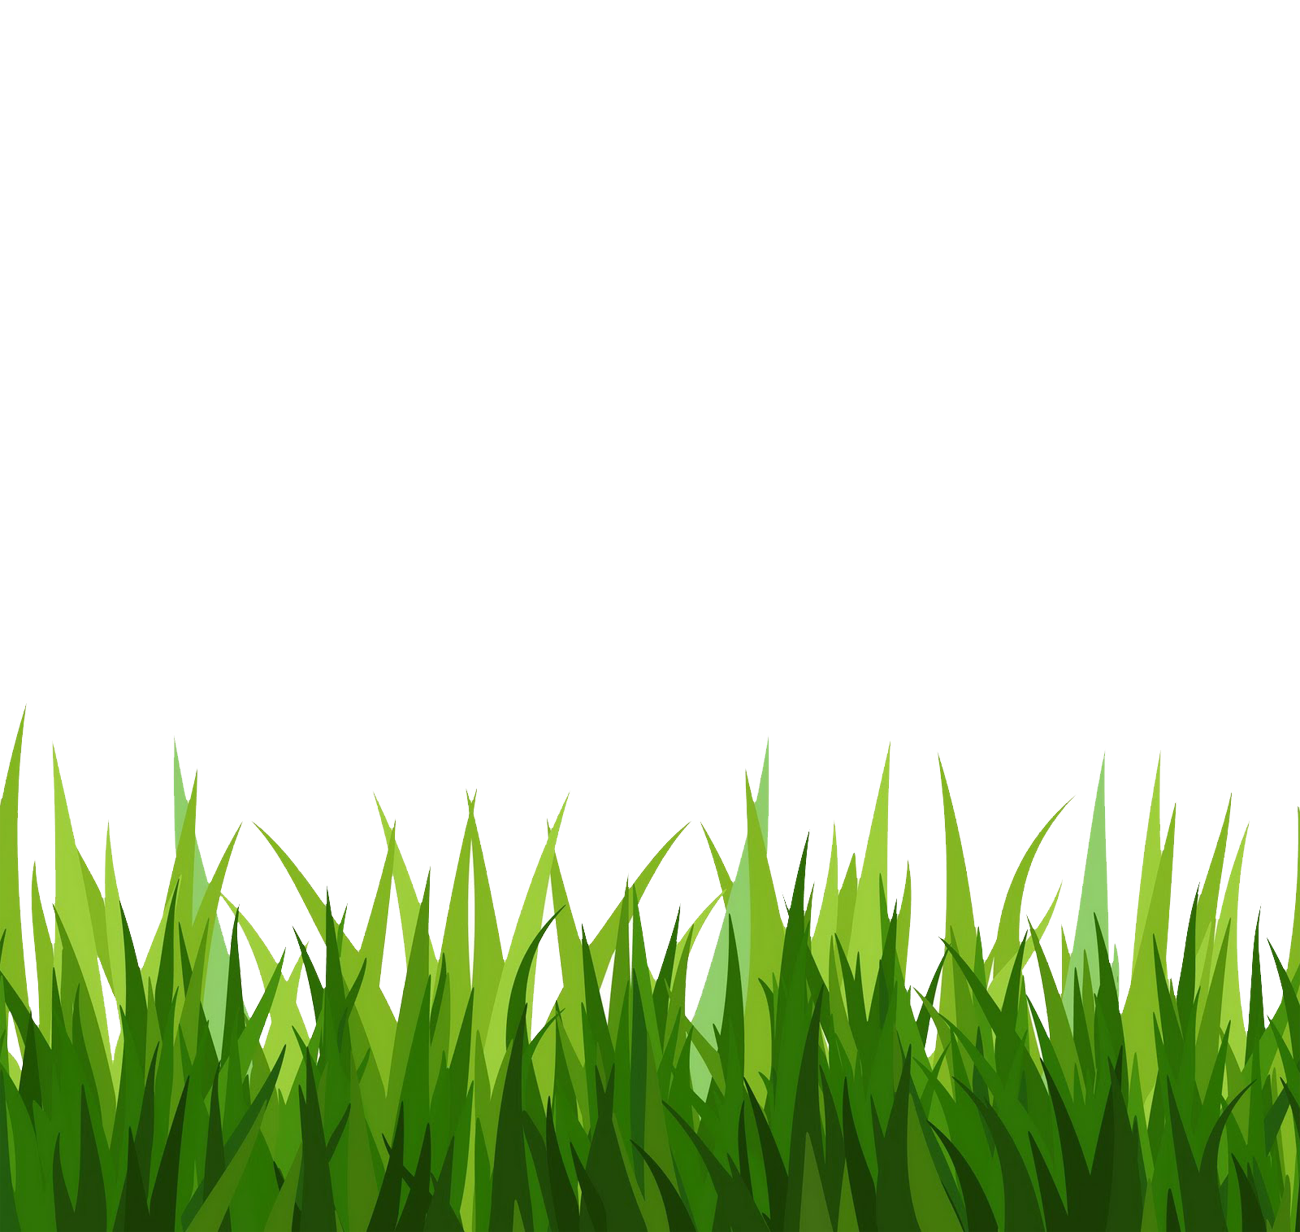 green grass clipart png